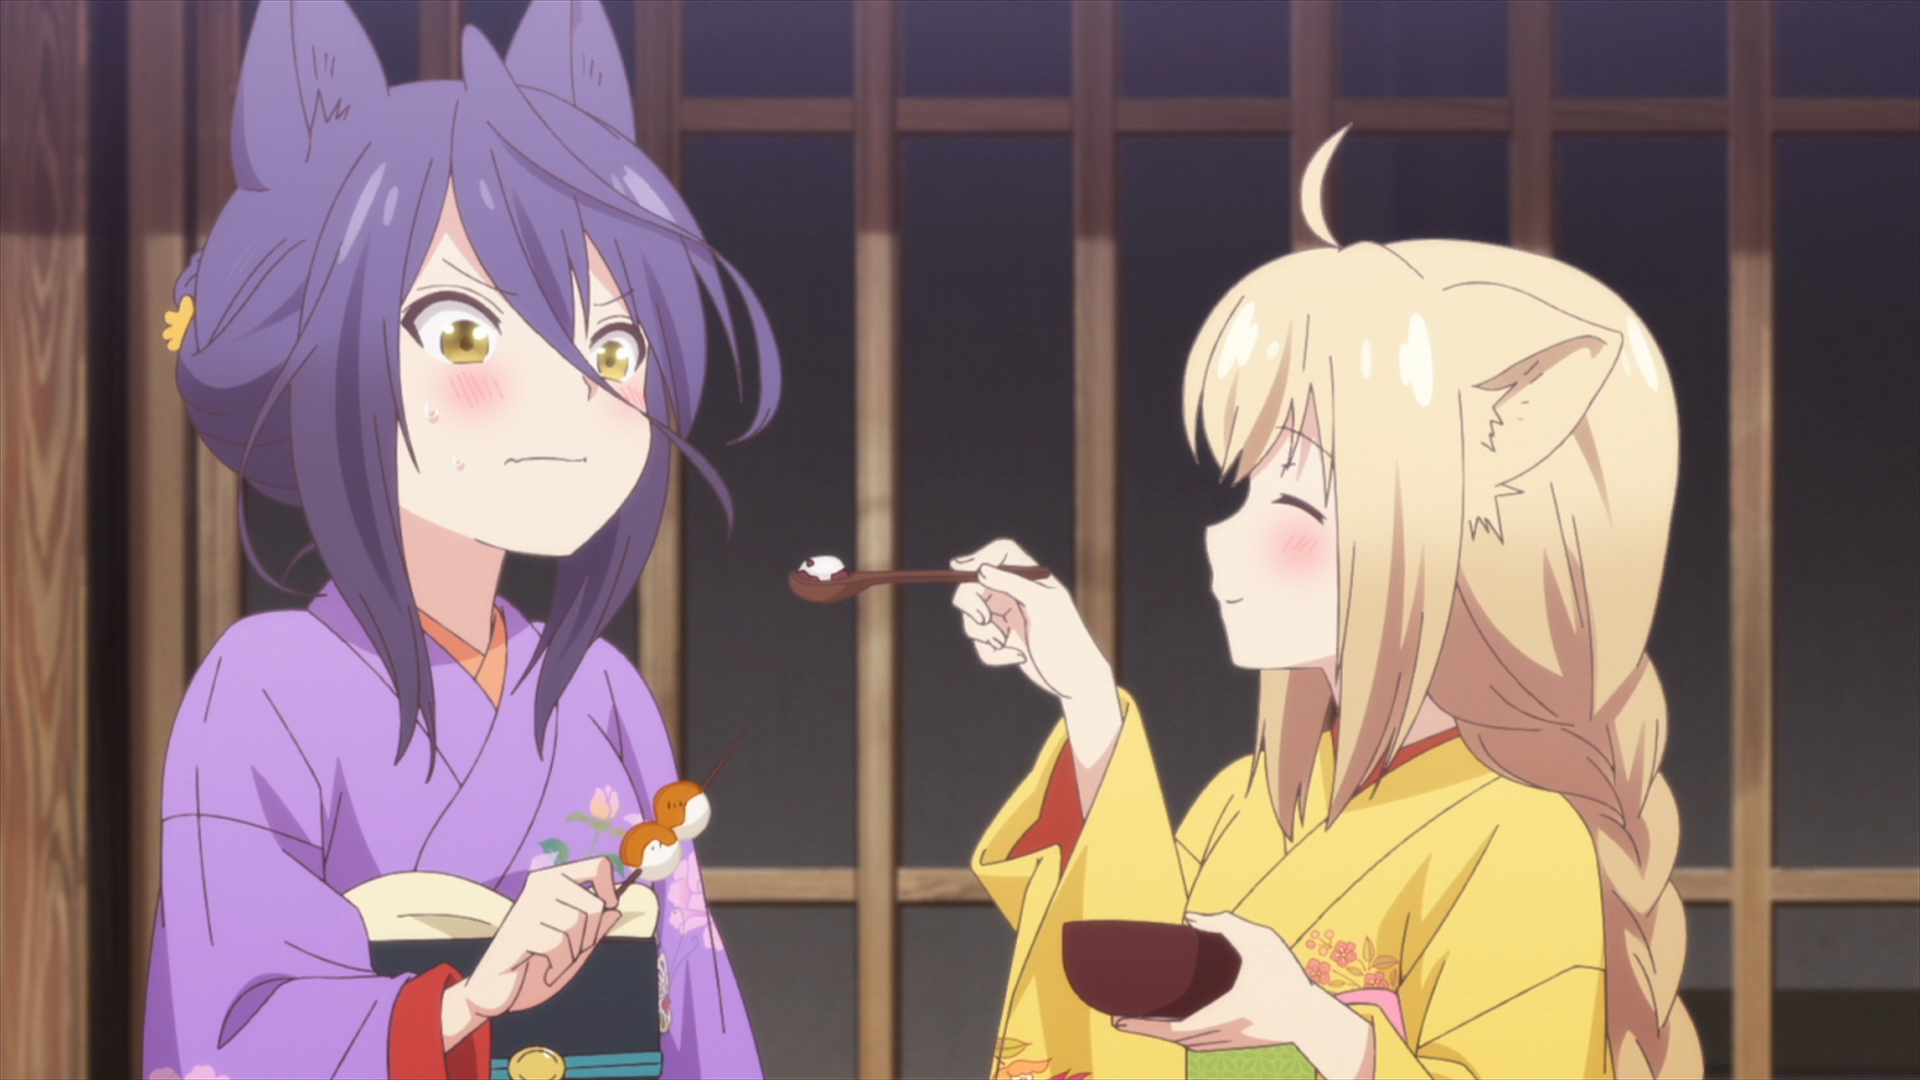 Satsuki se sonroja cuando Yuzu ofrece un bocado de su dulce de arroz y frijoles en una escena del anime de televisión KONOHANA KITAN.